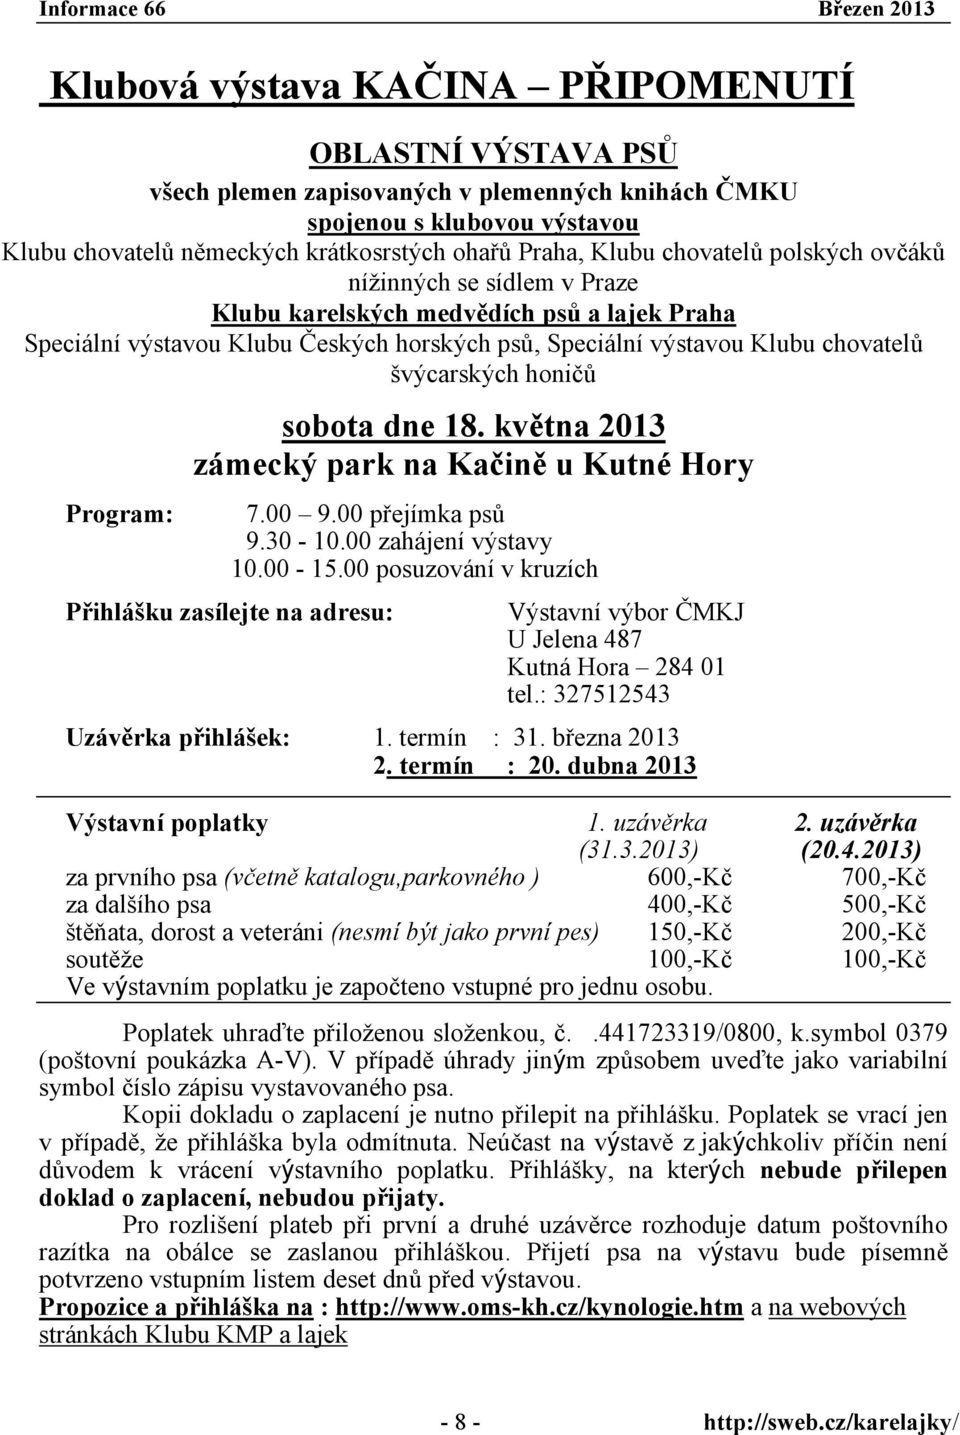 Program: sobota dne 18. května 2013 zámecký park na Kačině u Kutné Hory 7.00 9.00 přejímka psů 9.30-10.00 zahájení výstavy 10.00-15.